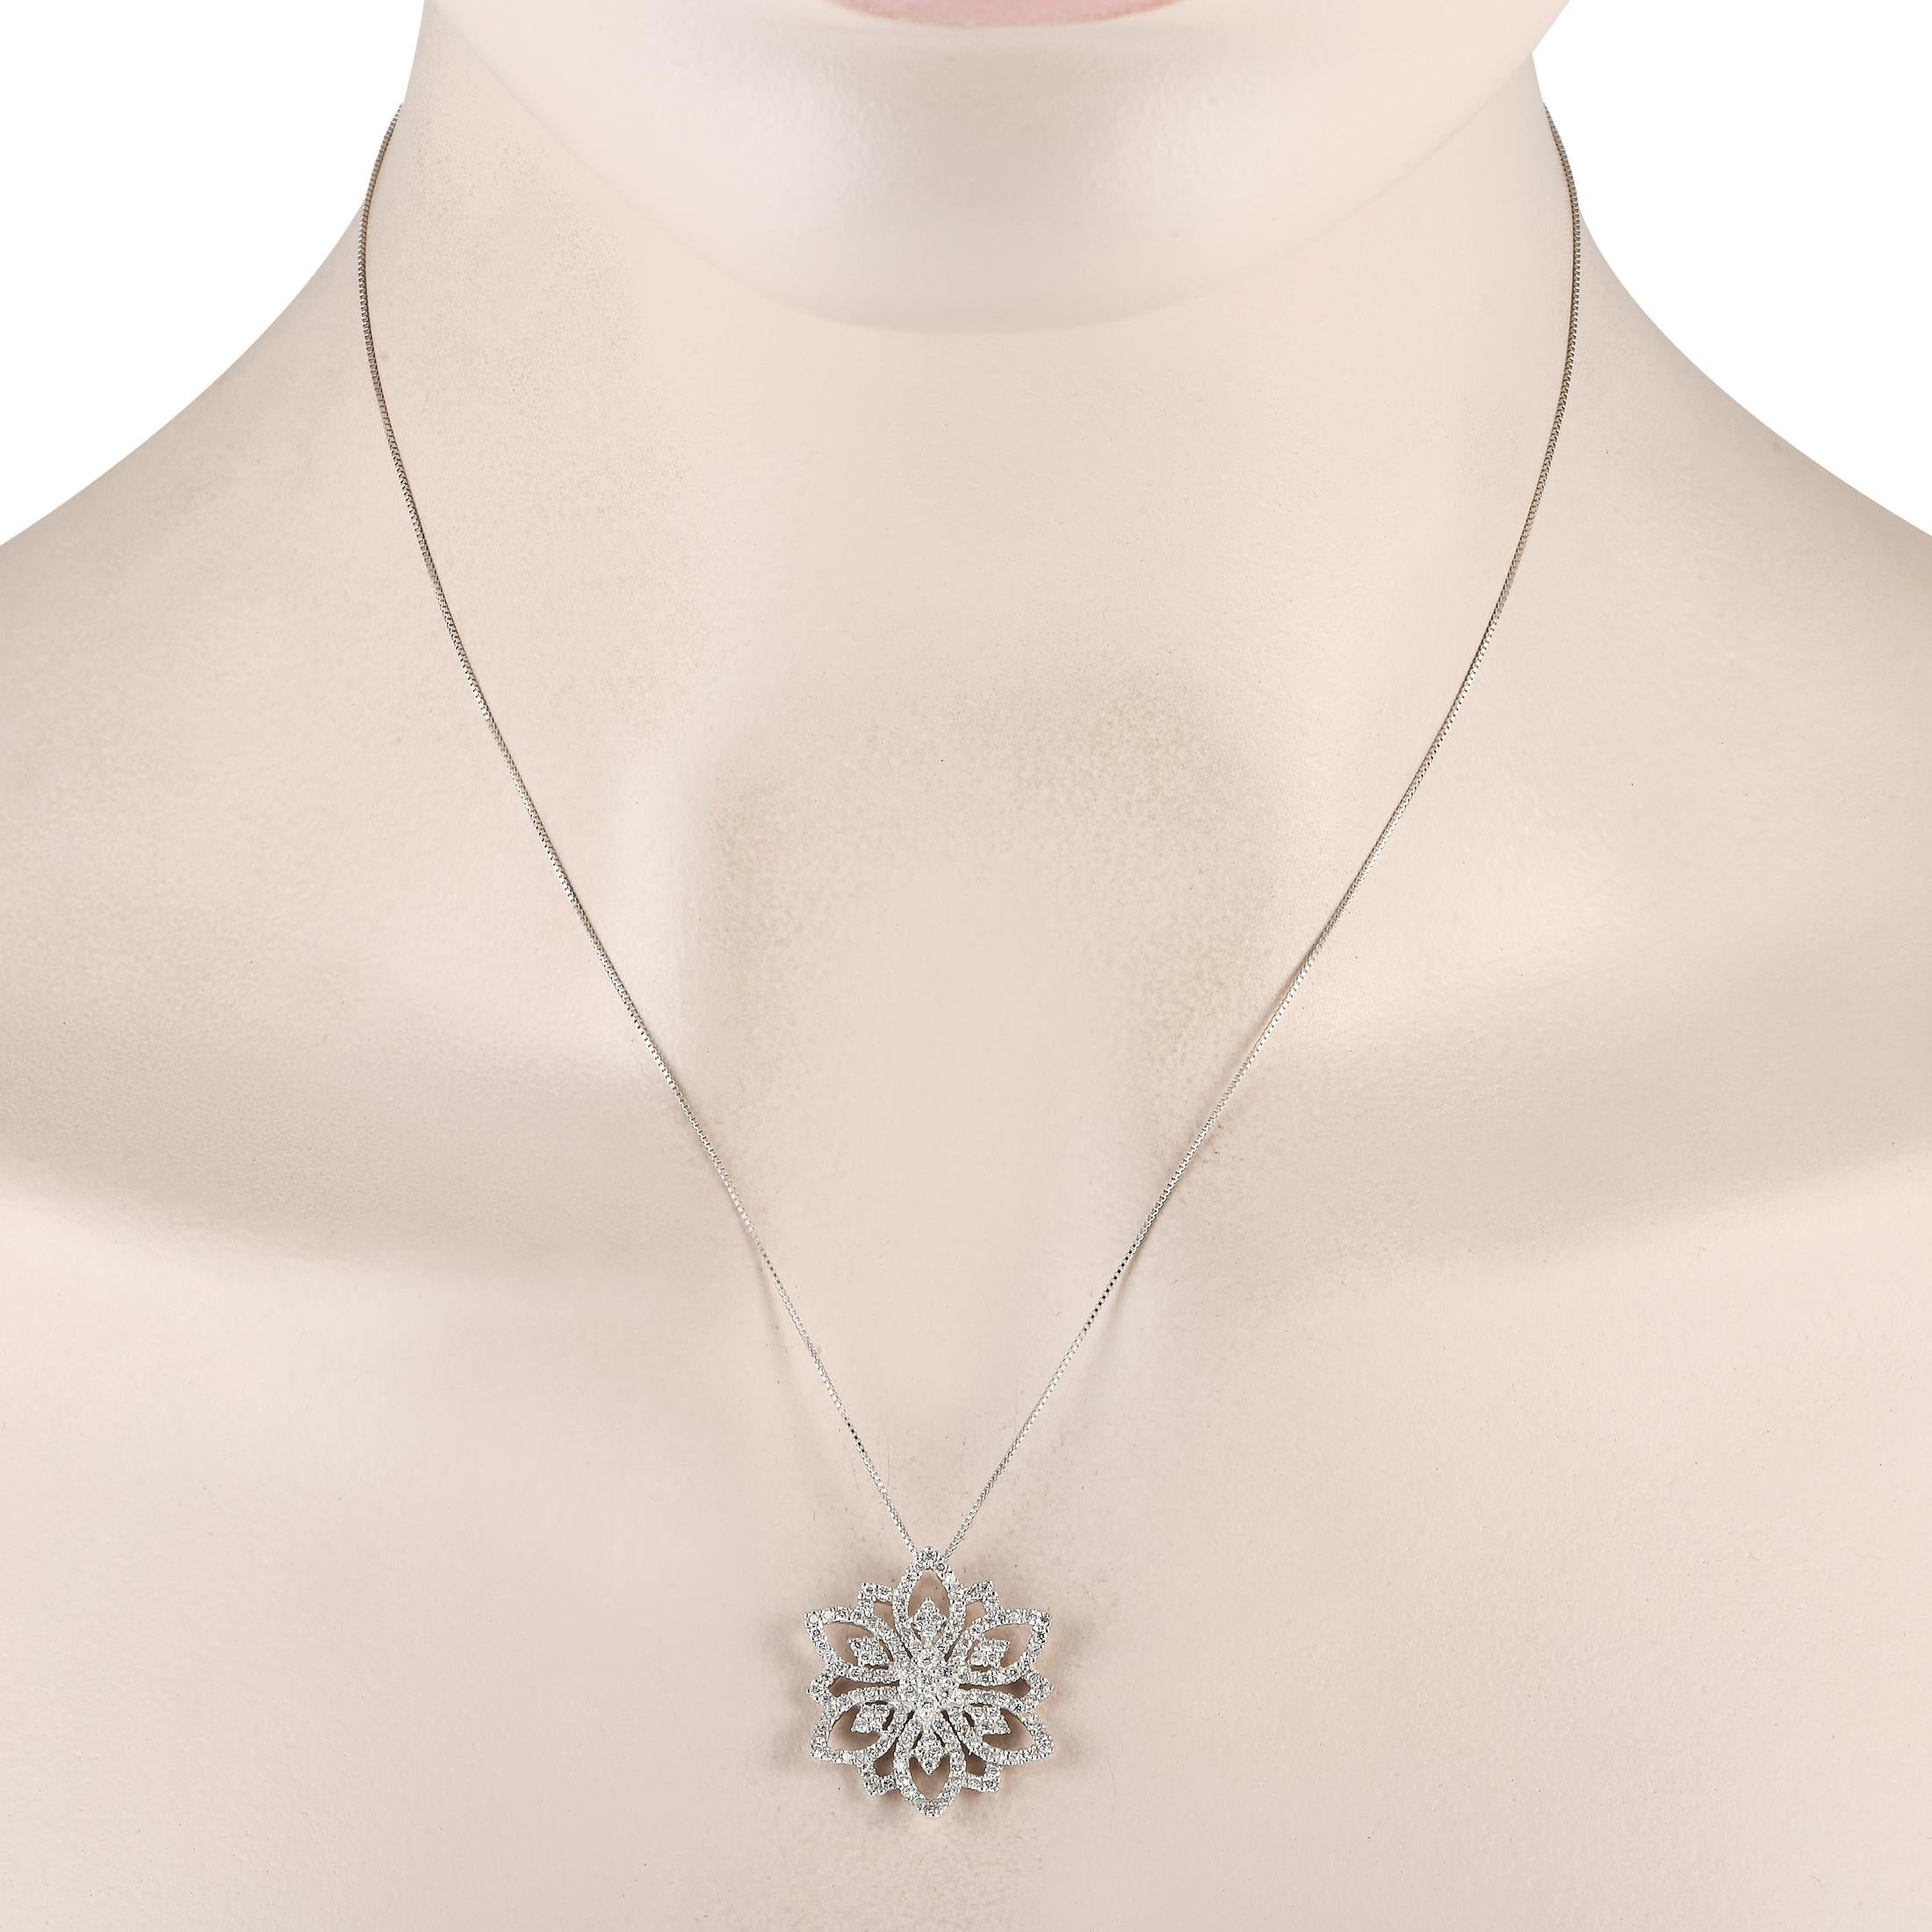 Ce collier en diamants est l'accessoire parfait pour ajouter une touche de romantisme à vos tenues. Vous adorerez l'élégance discrète du pendentif 1 x 1 inspiré d'une fleur sur le collier à chaîne en forme de boîte. Chaque contour est